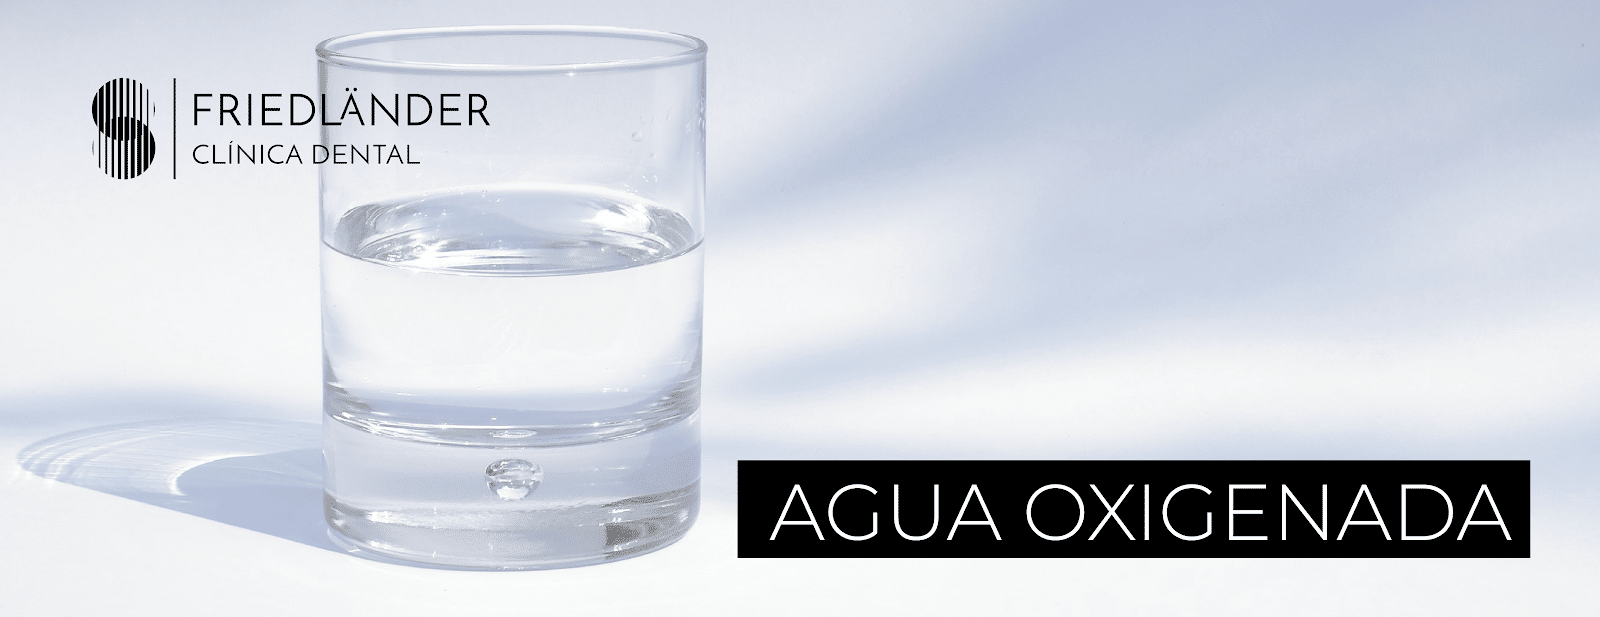 agua oxigenada para el dolor de muelas